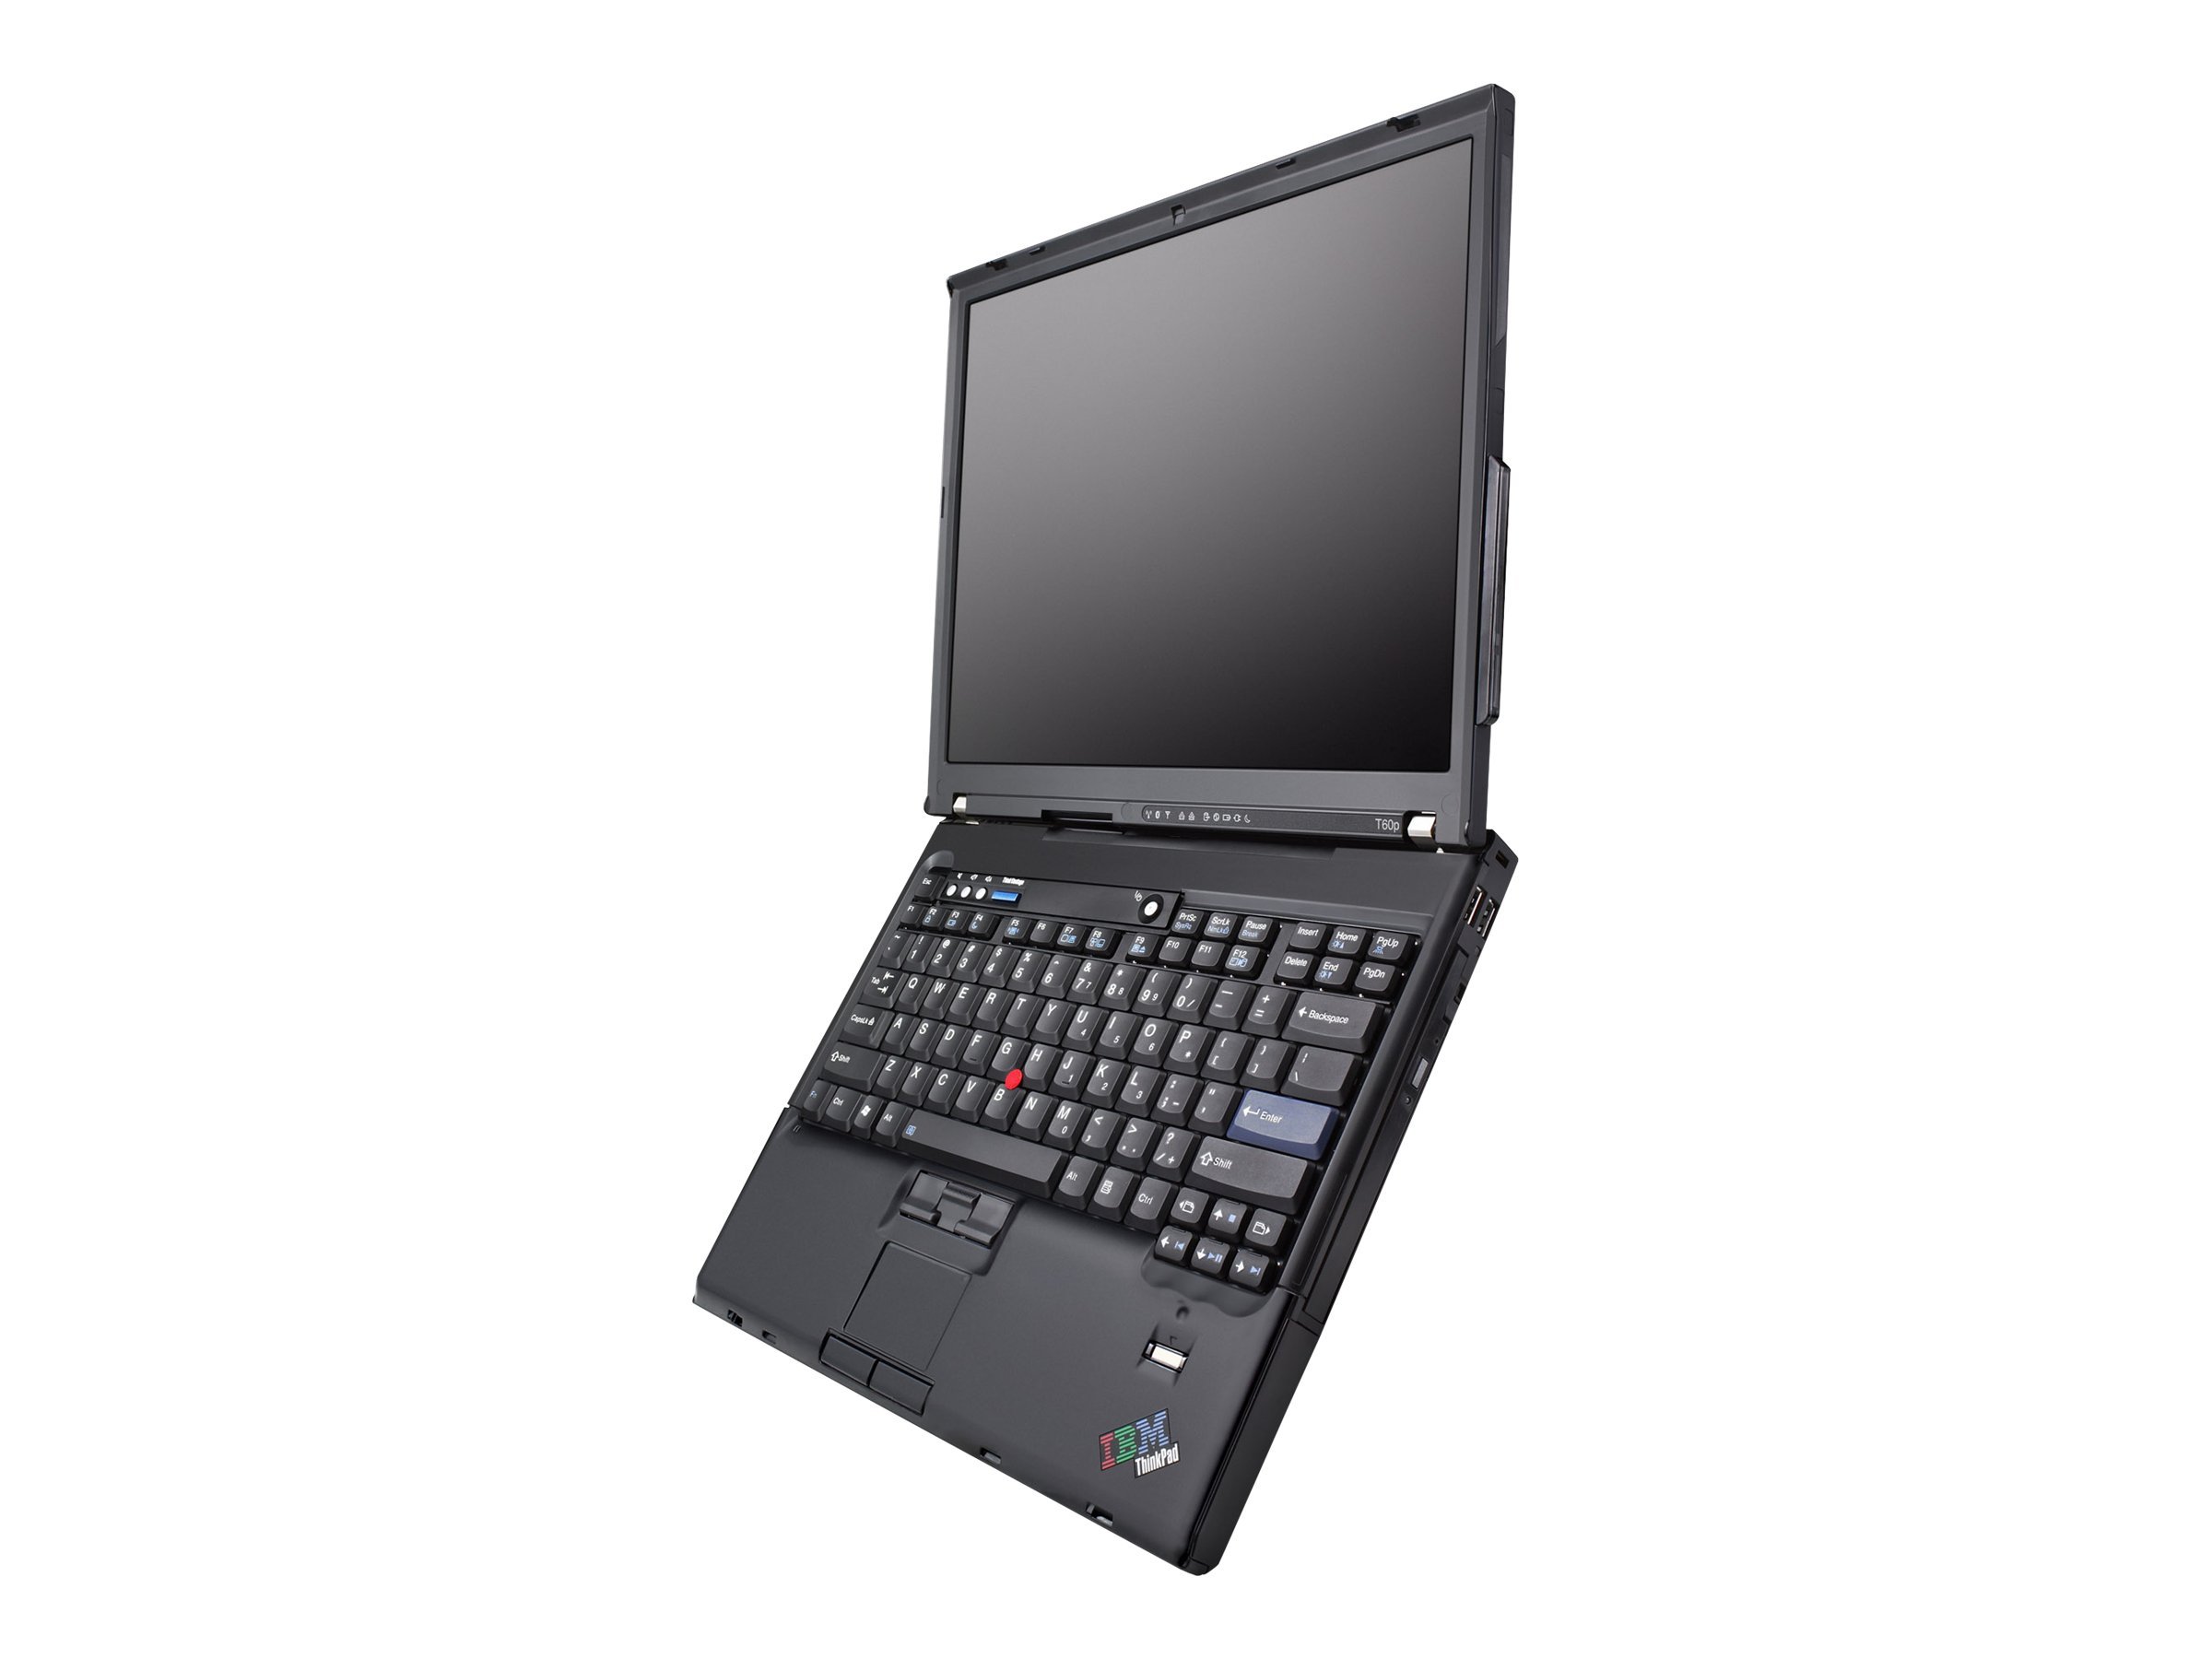 Lenovo ThinkPad T60p (2007)